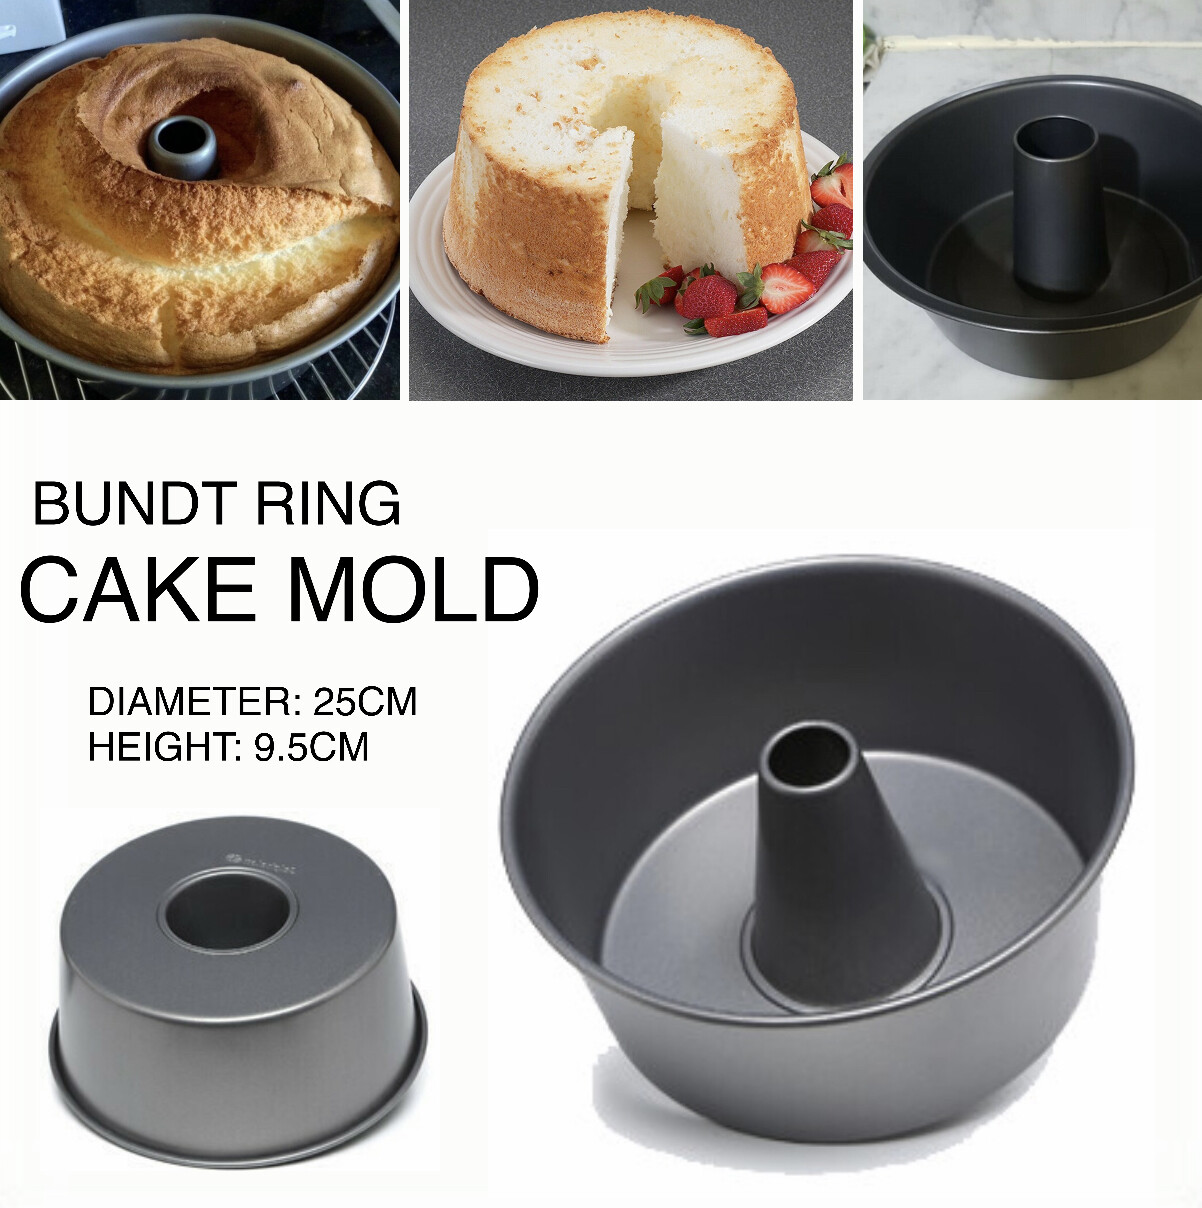 Bundt Ring Cake Mold